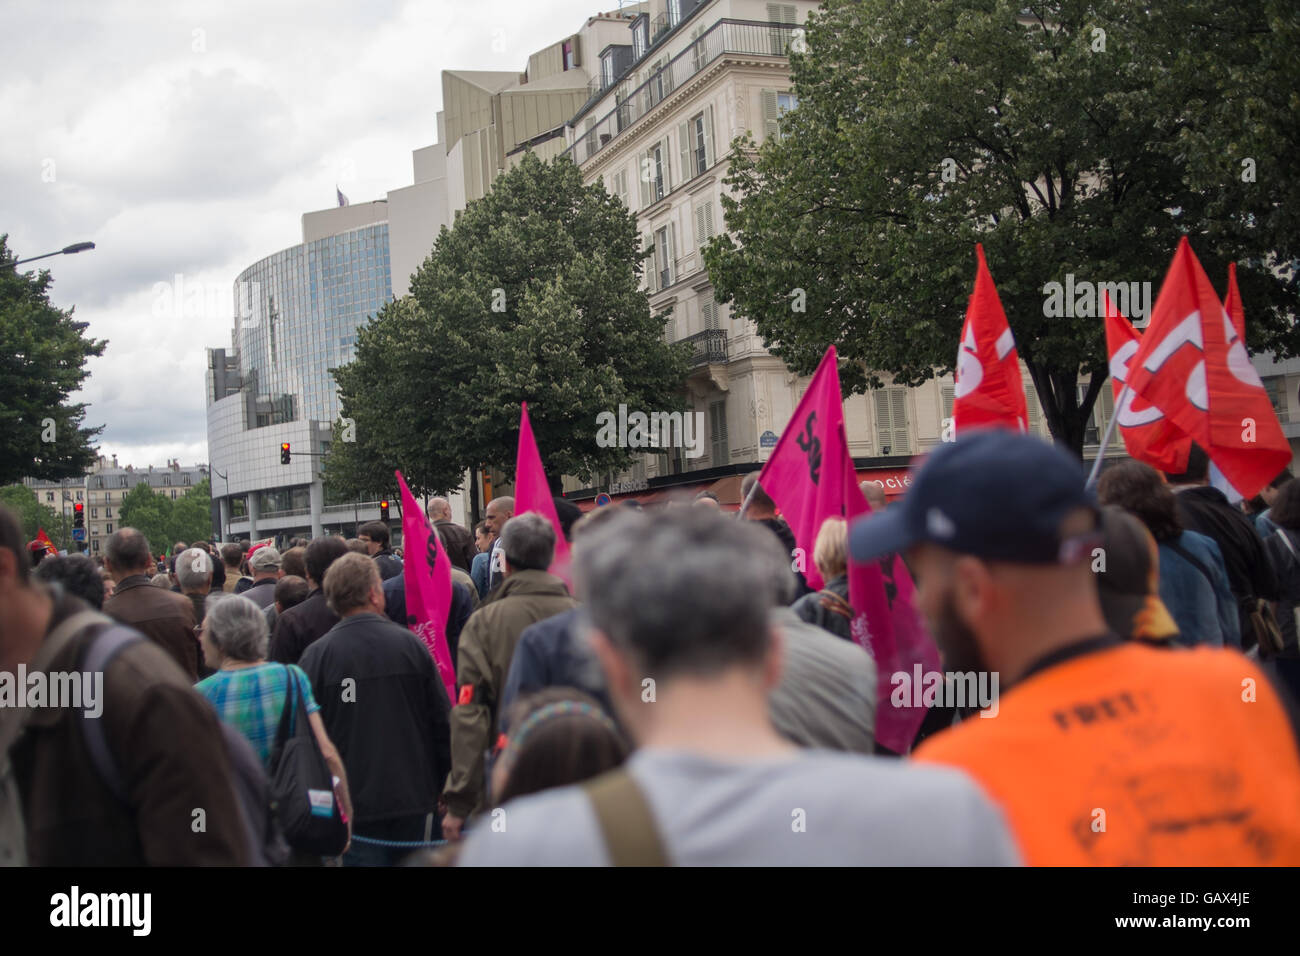 Paris, France. 05th July, 2016. 05/07/2016 - France/Ile-de-France/Paris - Manifestation contre la loi Travail (El Khomri) a Paris le jour de son retour a l'assemblee National, contre l'utilisation du 49.3 Gerard Cambon/Le Pictorium Protest again Work Law in Paris - 05/07/2016 - France/Ile-de-France (region)/Paris - Protest again Work Law in Paris, on the day the aw is back to french parliament. - Gerard Cambon/Le Pictorium Credit:  Christian Sauvan-Magnet/Alamy Live News Stock Photo